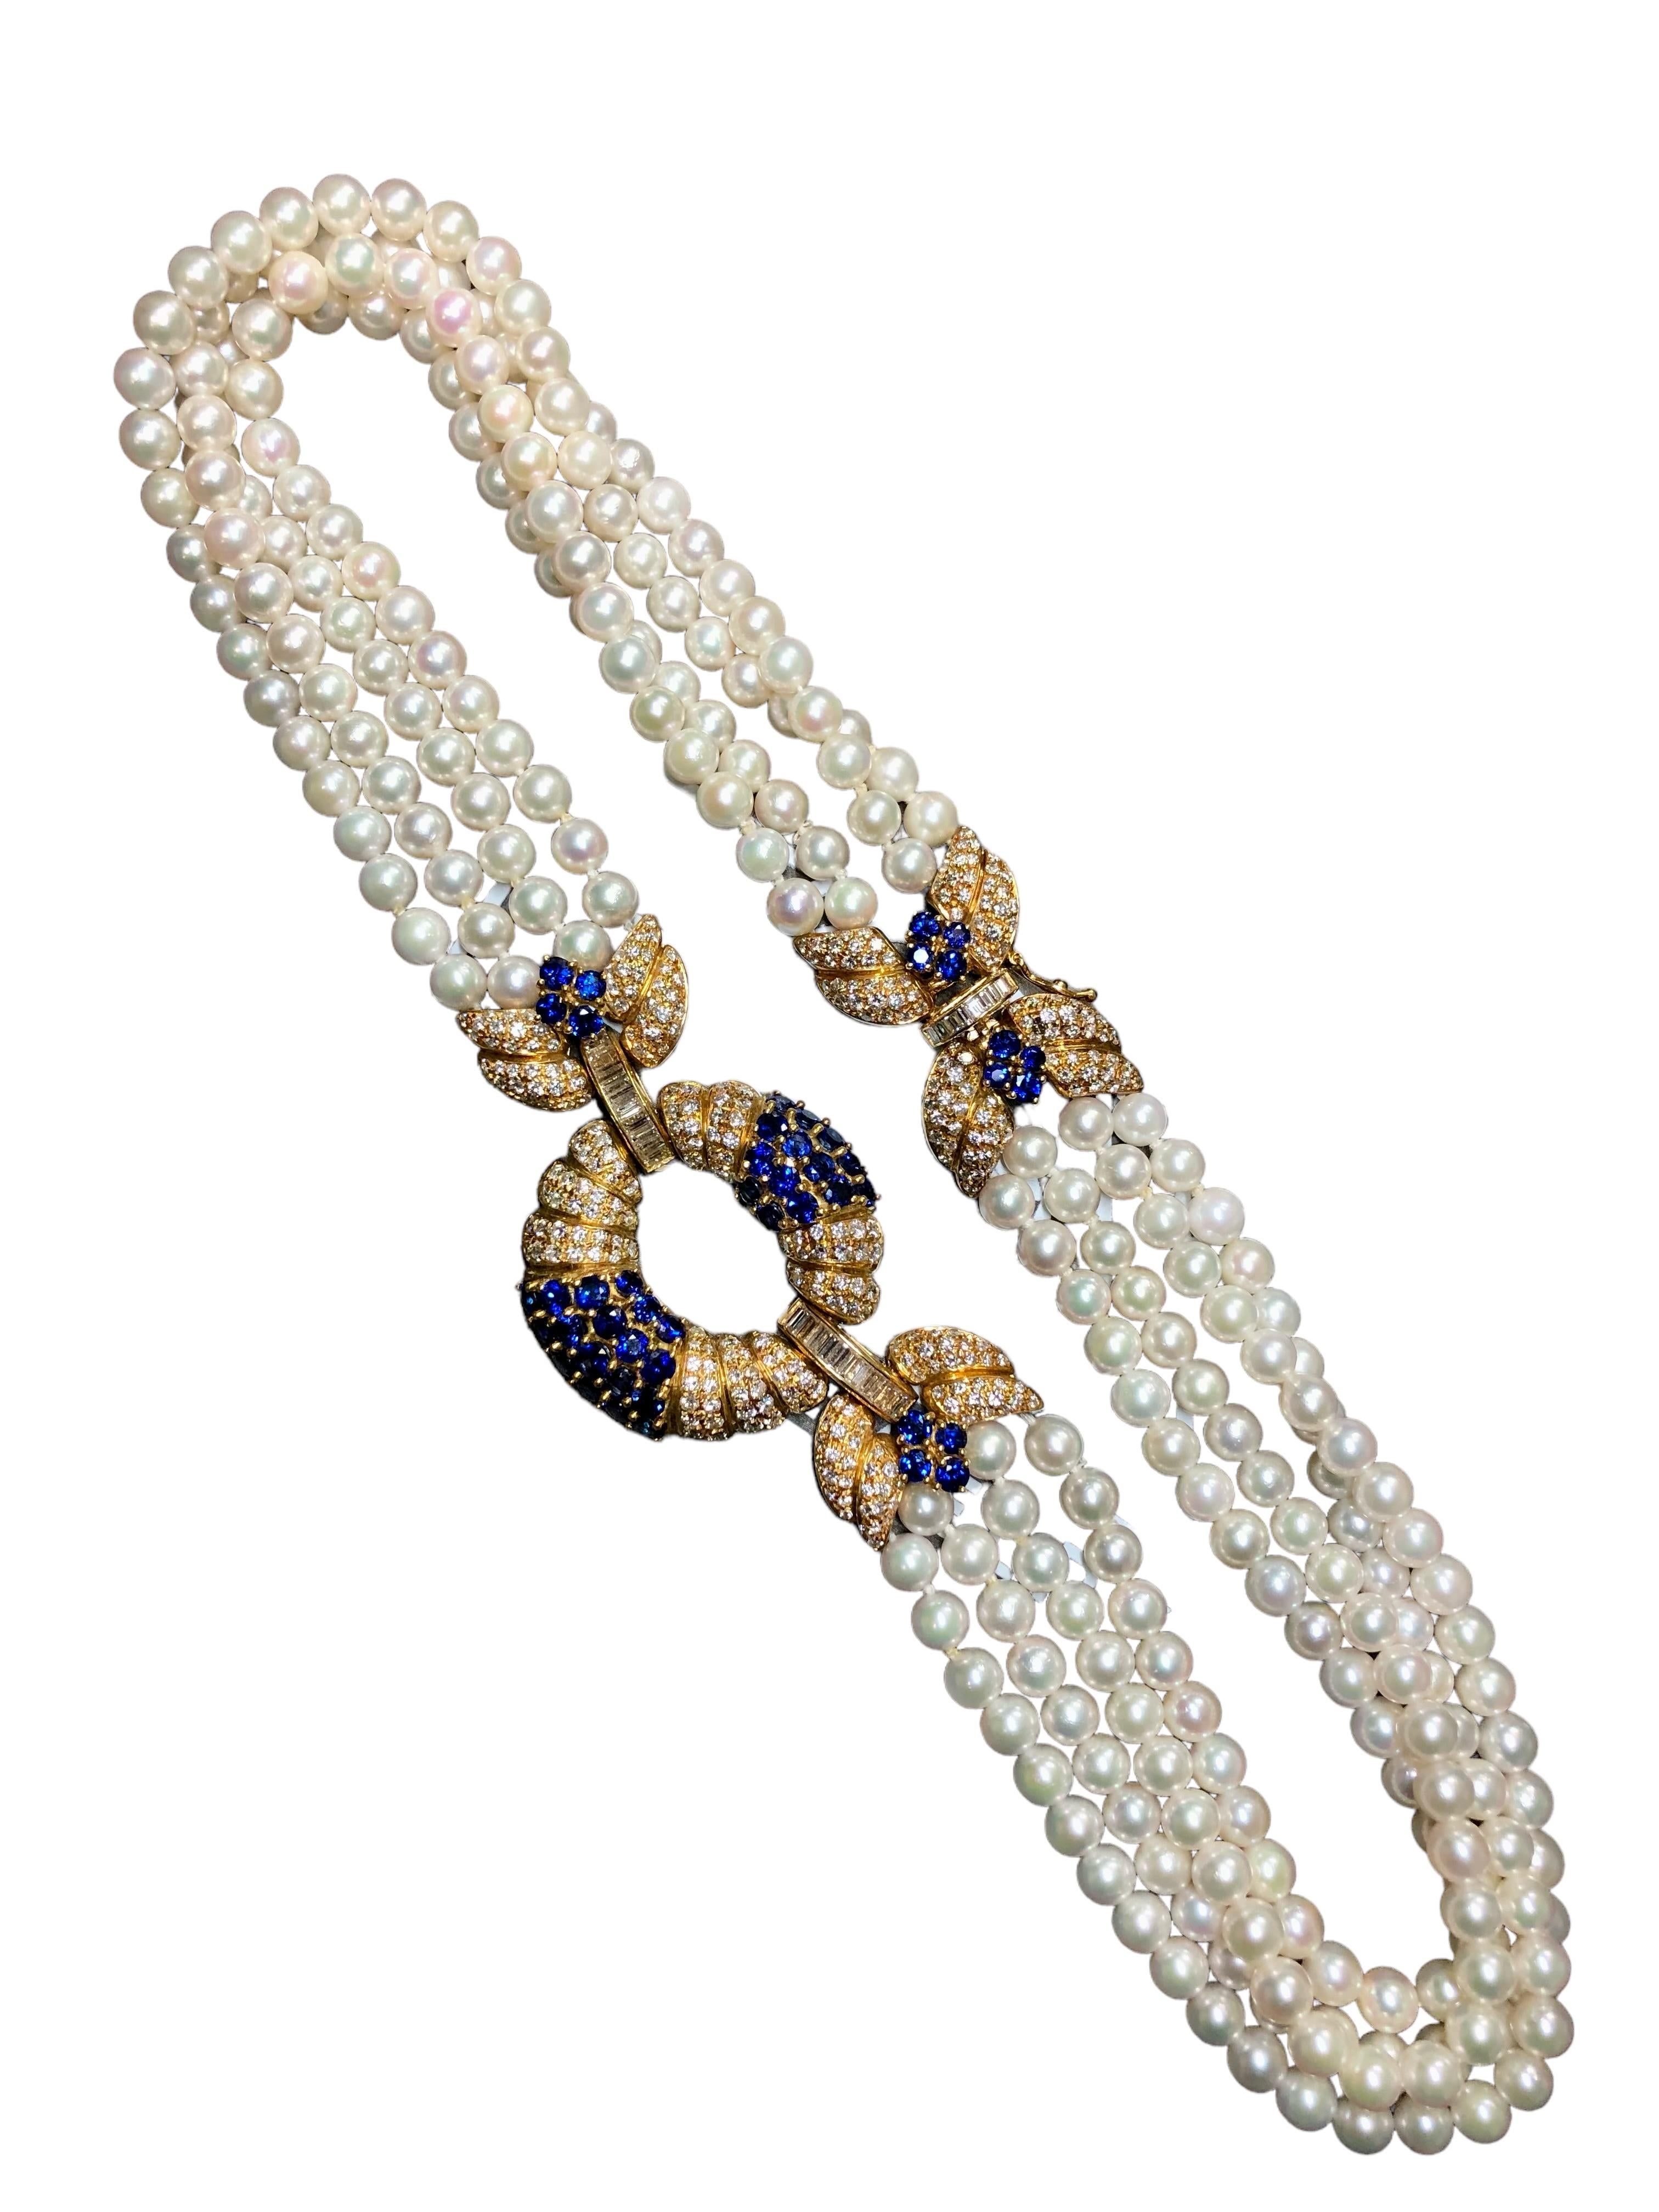 Contemporary Estate AIMETTI 18K Diamond Sapphire Pearl Italian Necklace 20.10cttw 17.25” For Sale